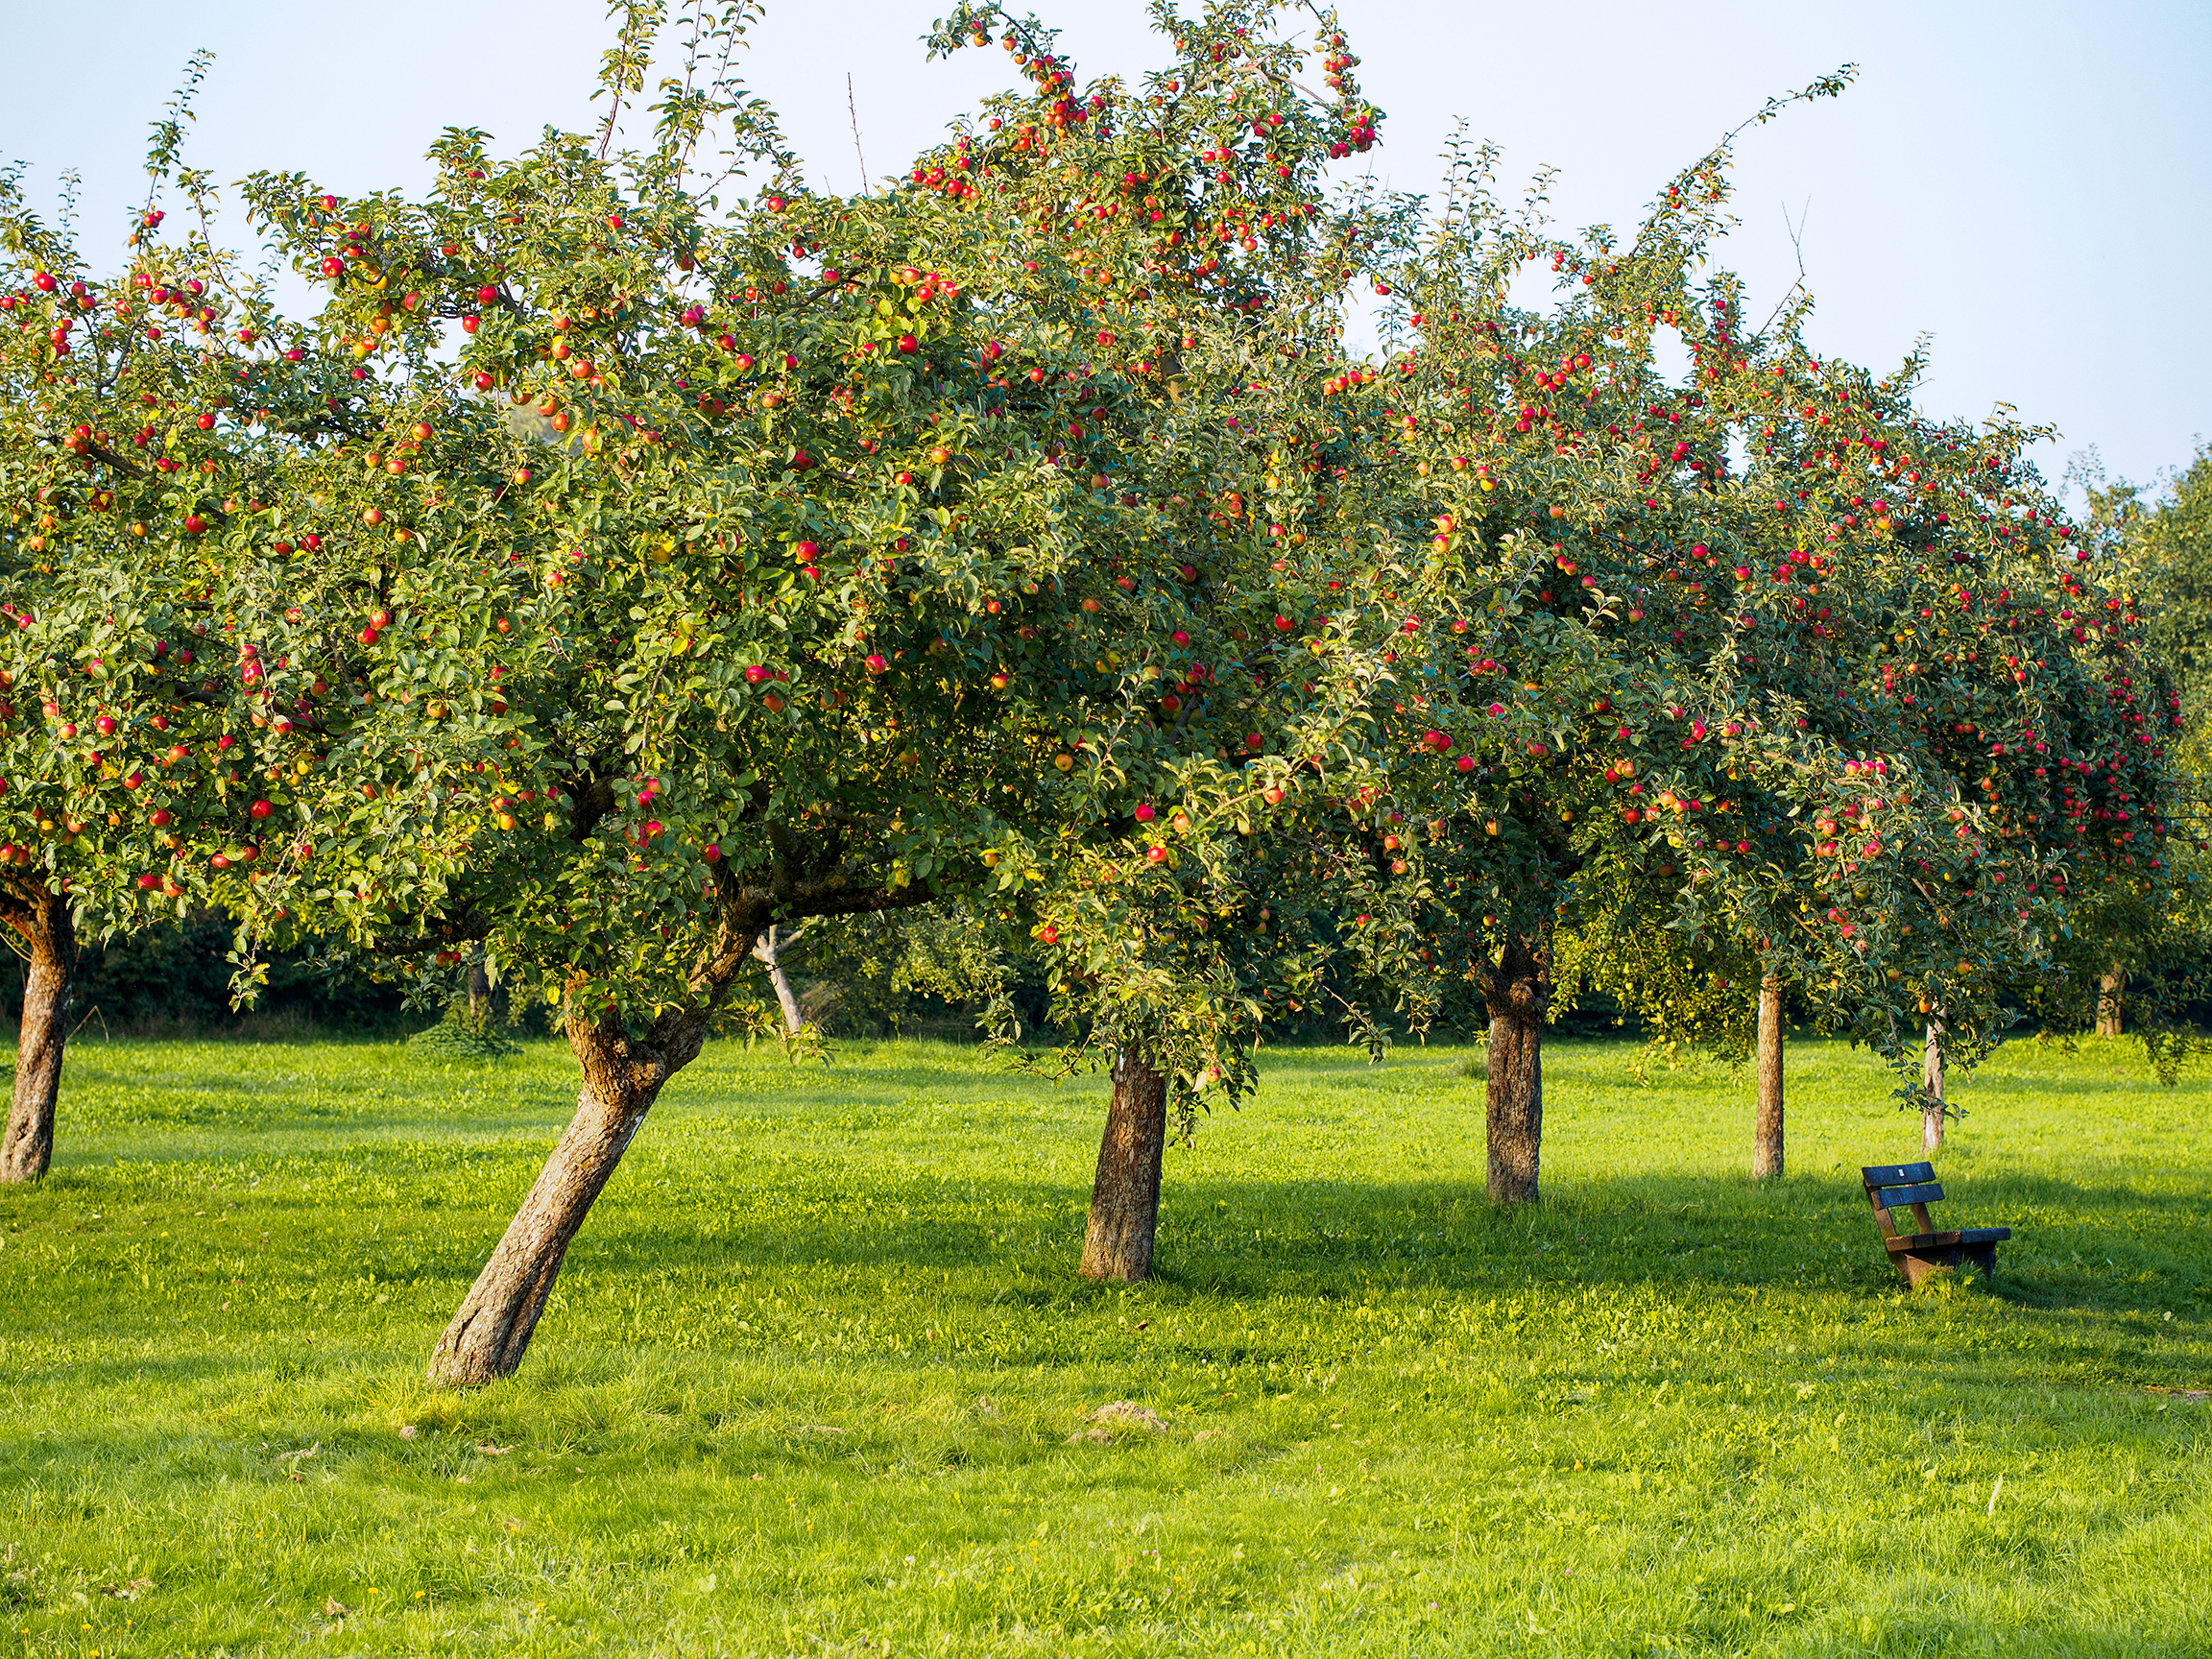 Mit dem 4,5 ha großen Obstlehrgarten hat die Stadt Weißenburg einen wichtigen Schritt getan, um regionale ökologische Besonderheiten einer breiten Öffentlichkeit zugänglich zu machen. Insgesamt sind 82 Lokalsorten mit jeweils zwei Hochstämmen vertreten.